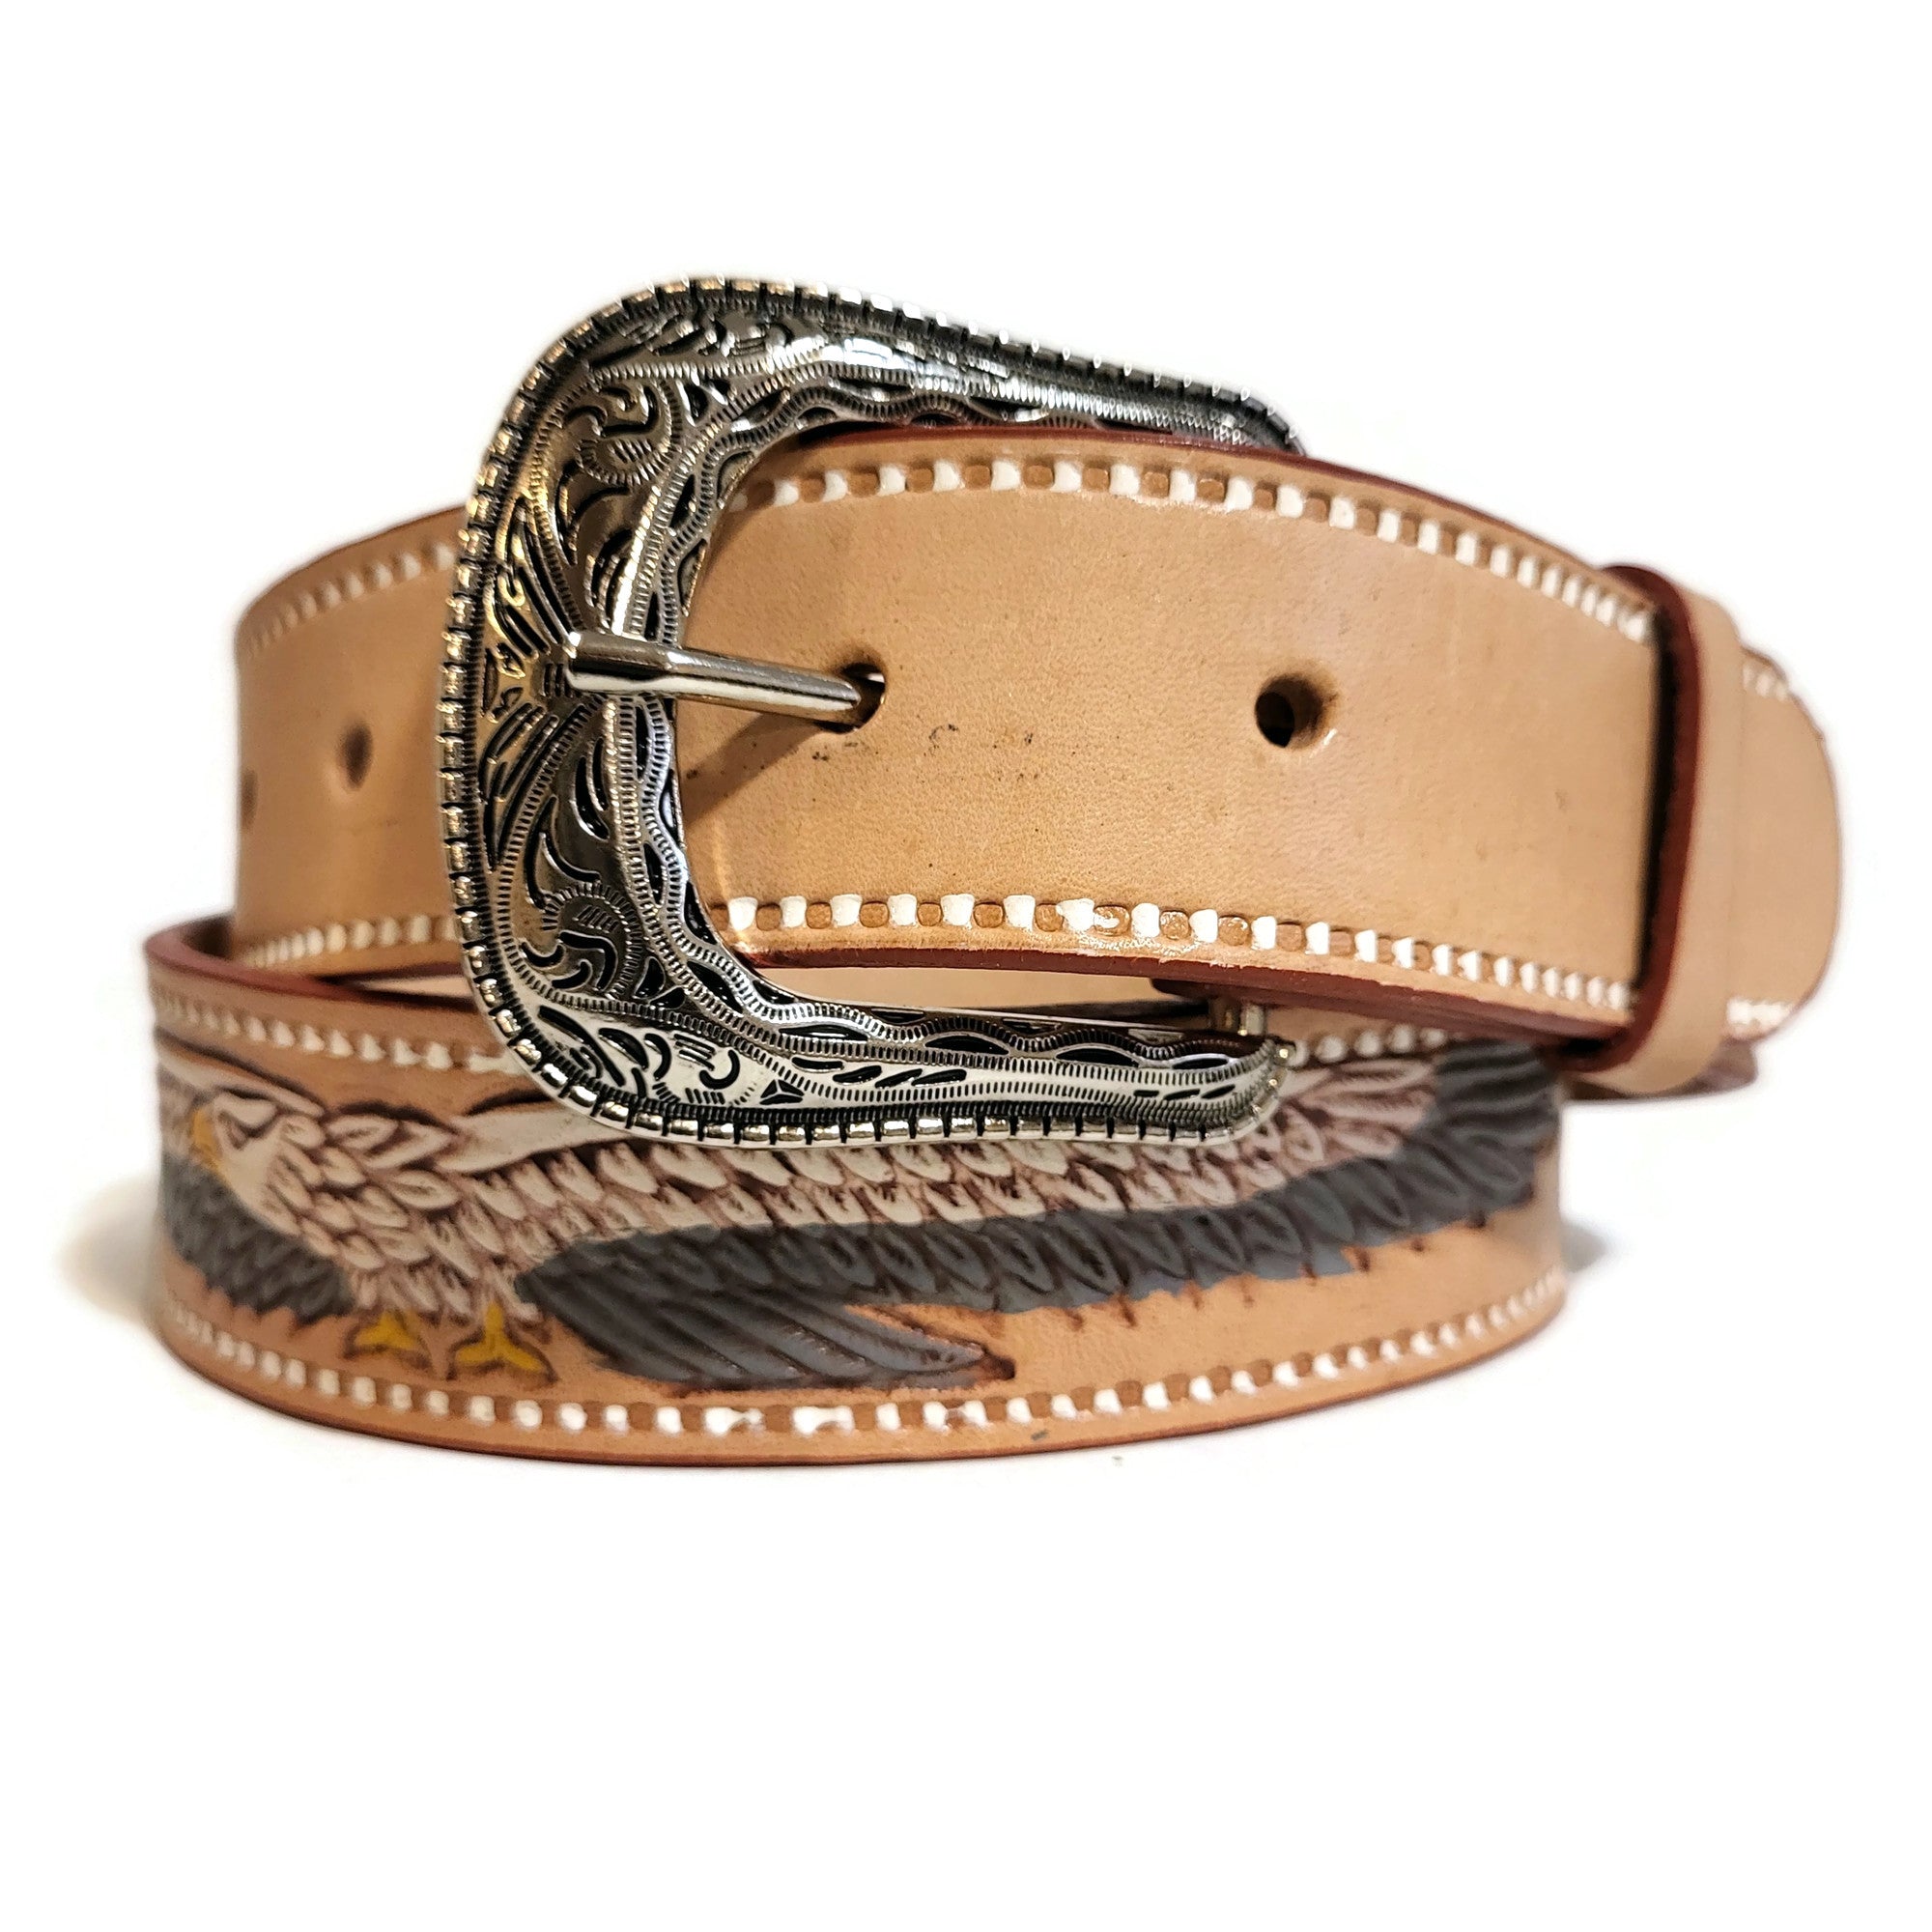 Western Leather Belt for men, handmade leather belt for men, casual belt for him , jeans leather belt, cowboy belt